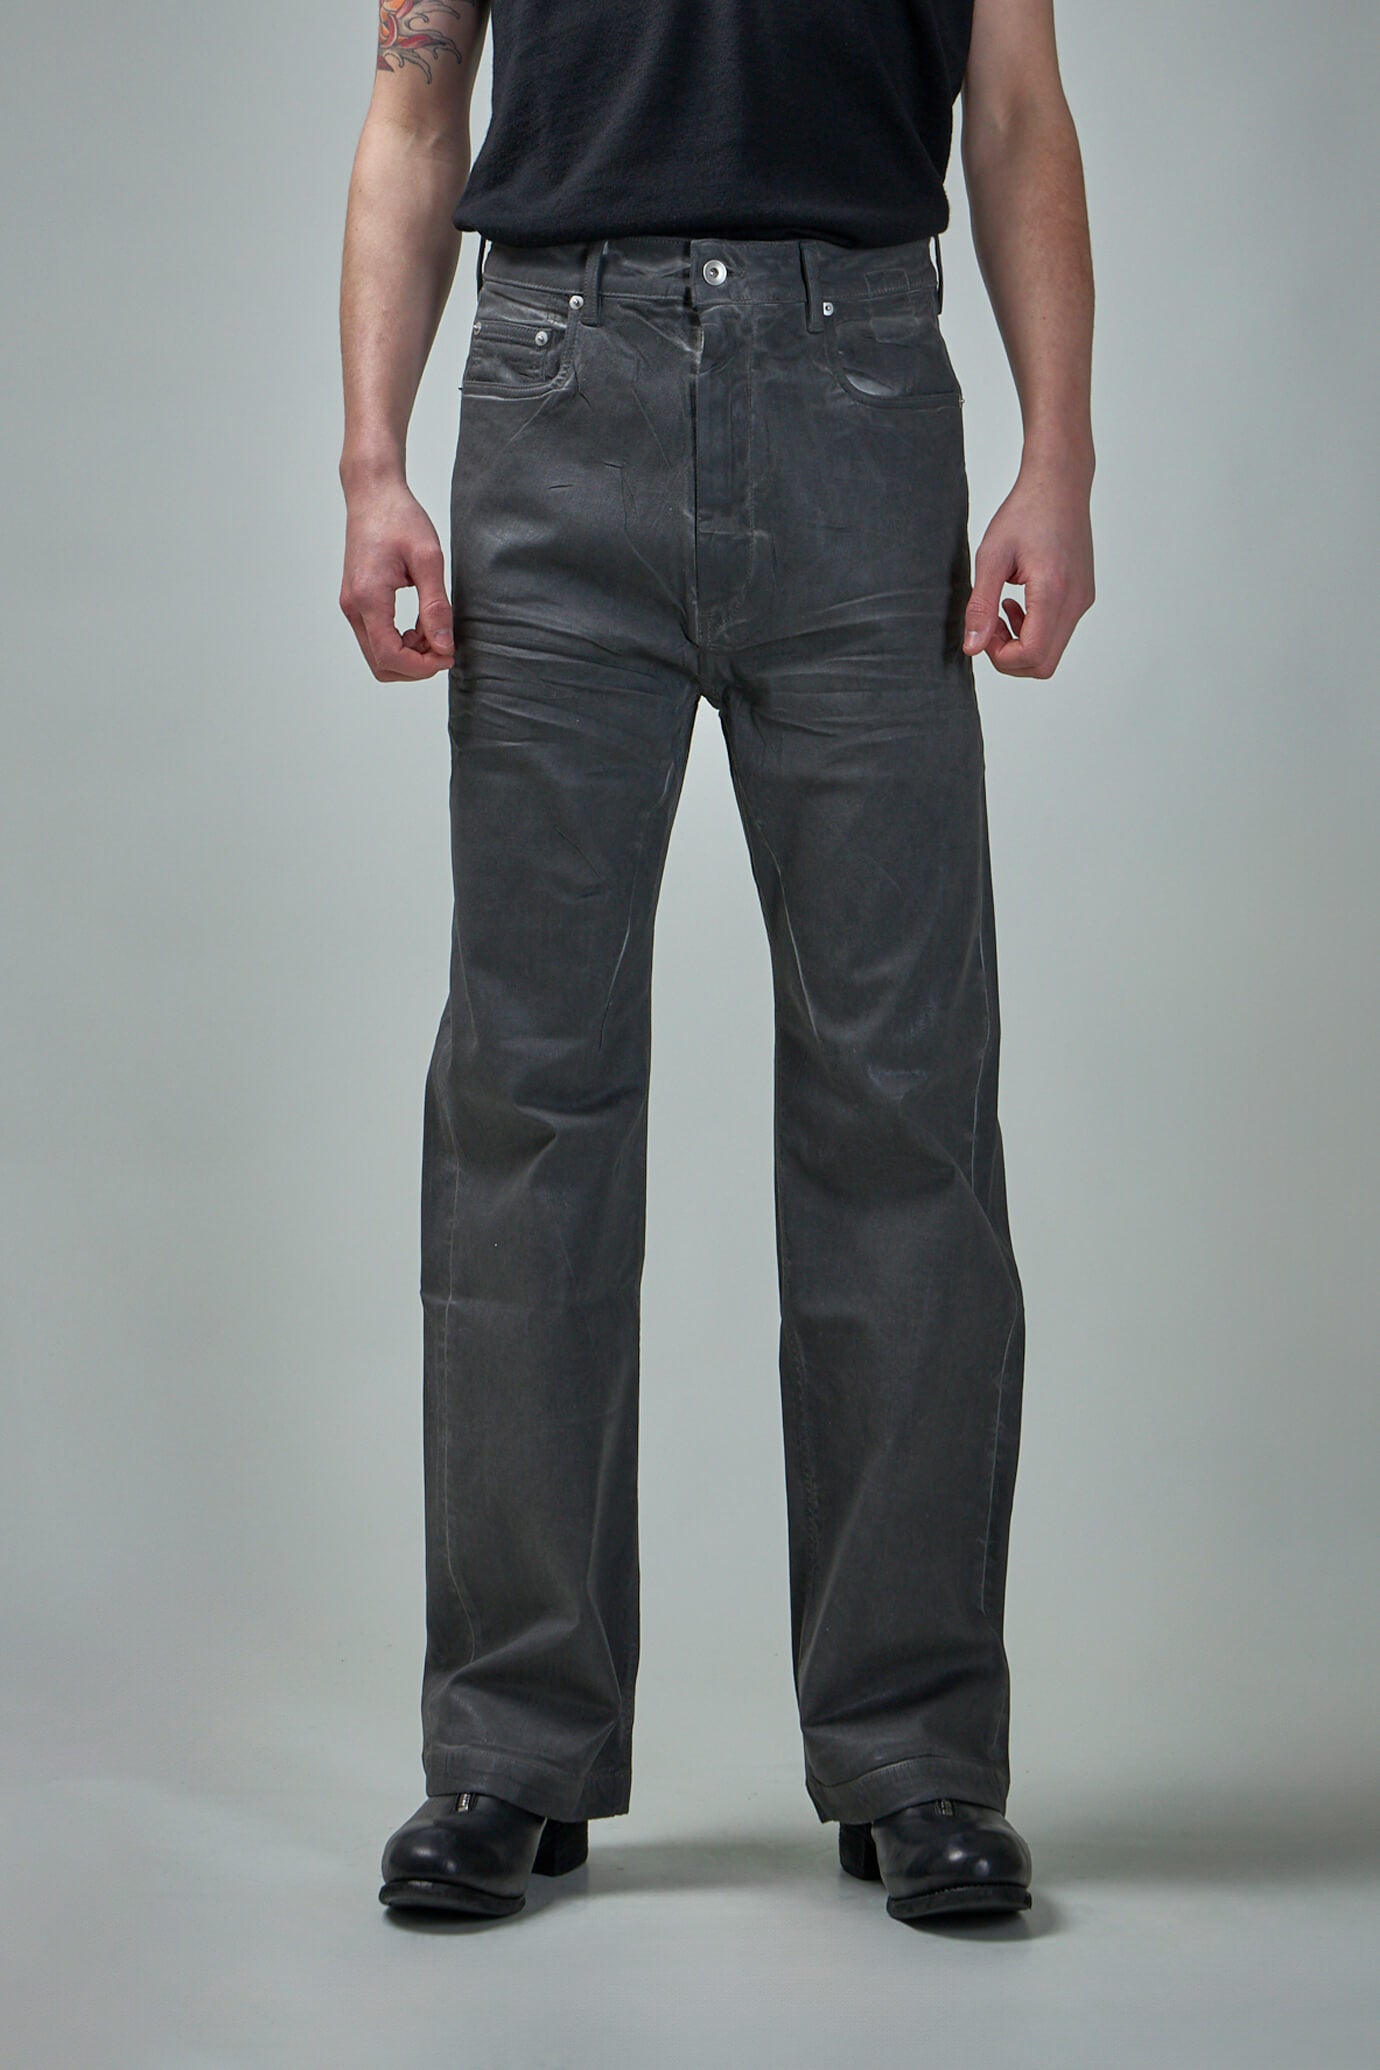 新品《 Rick Owens 》Geth Jeans 31 ( Black ) - students.com.kg